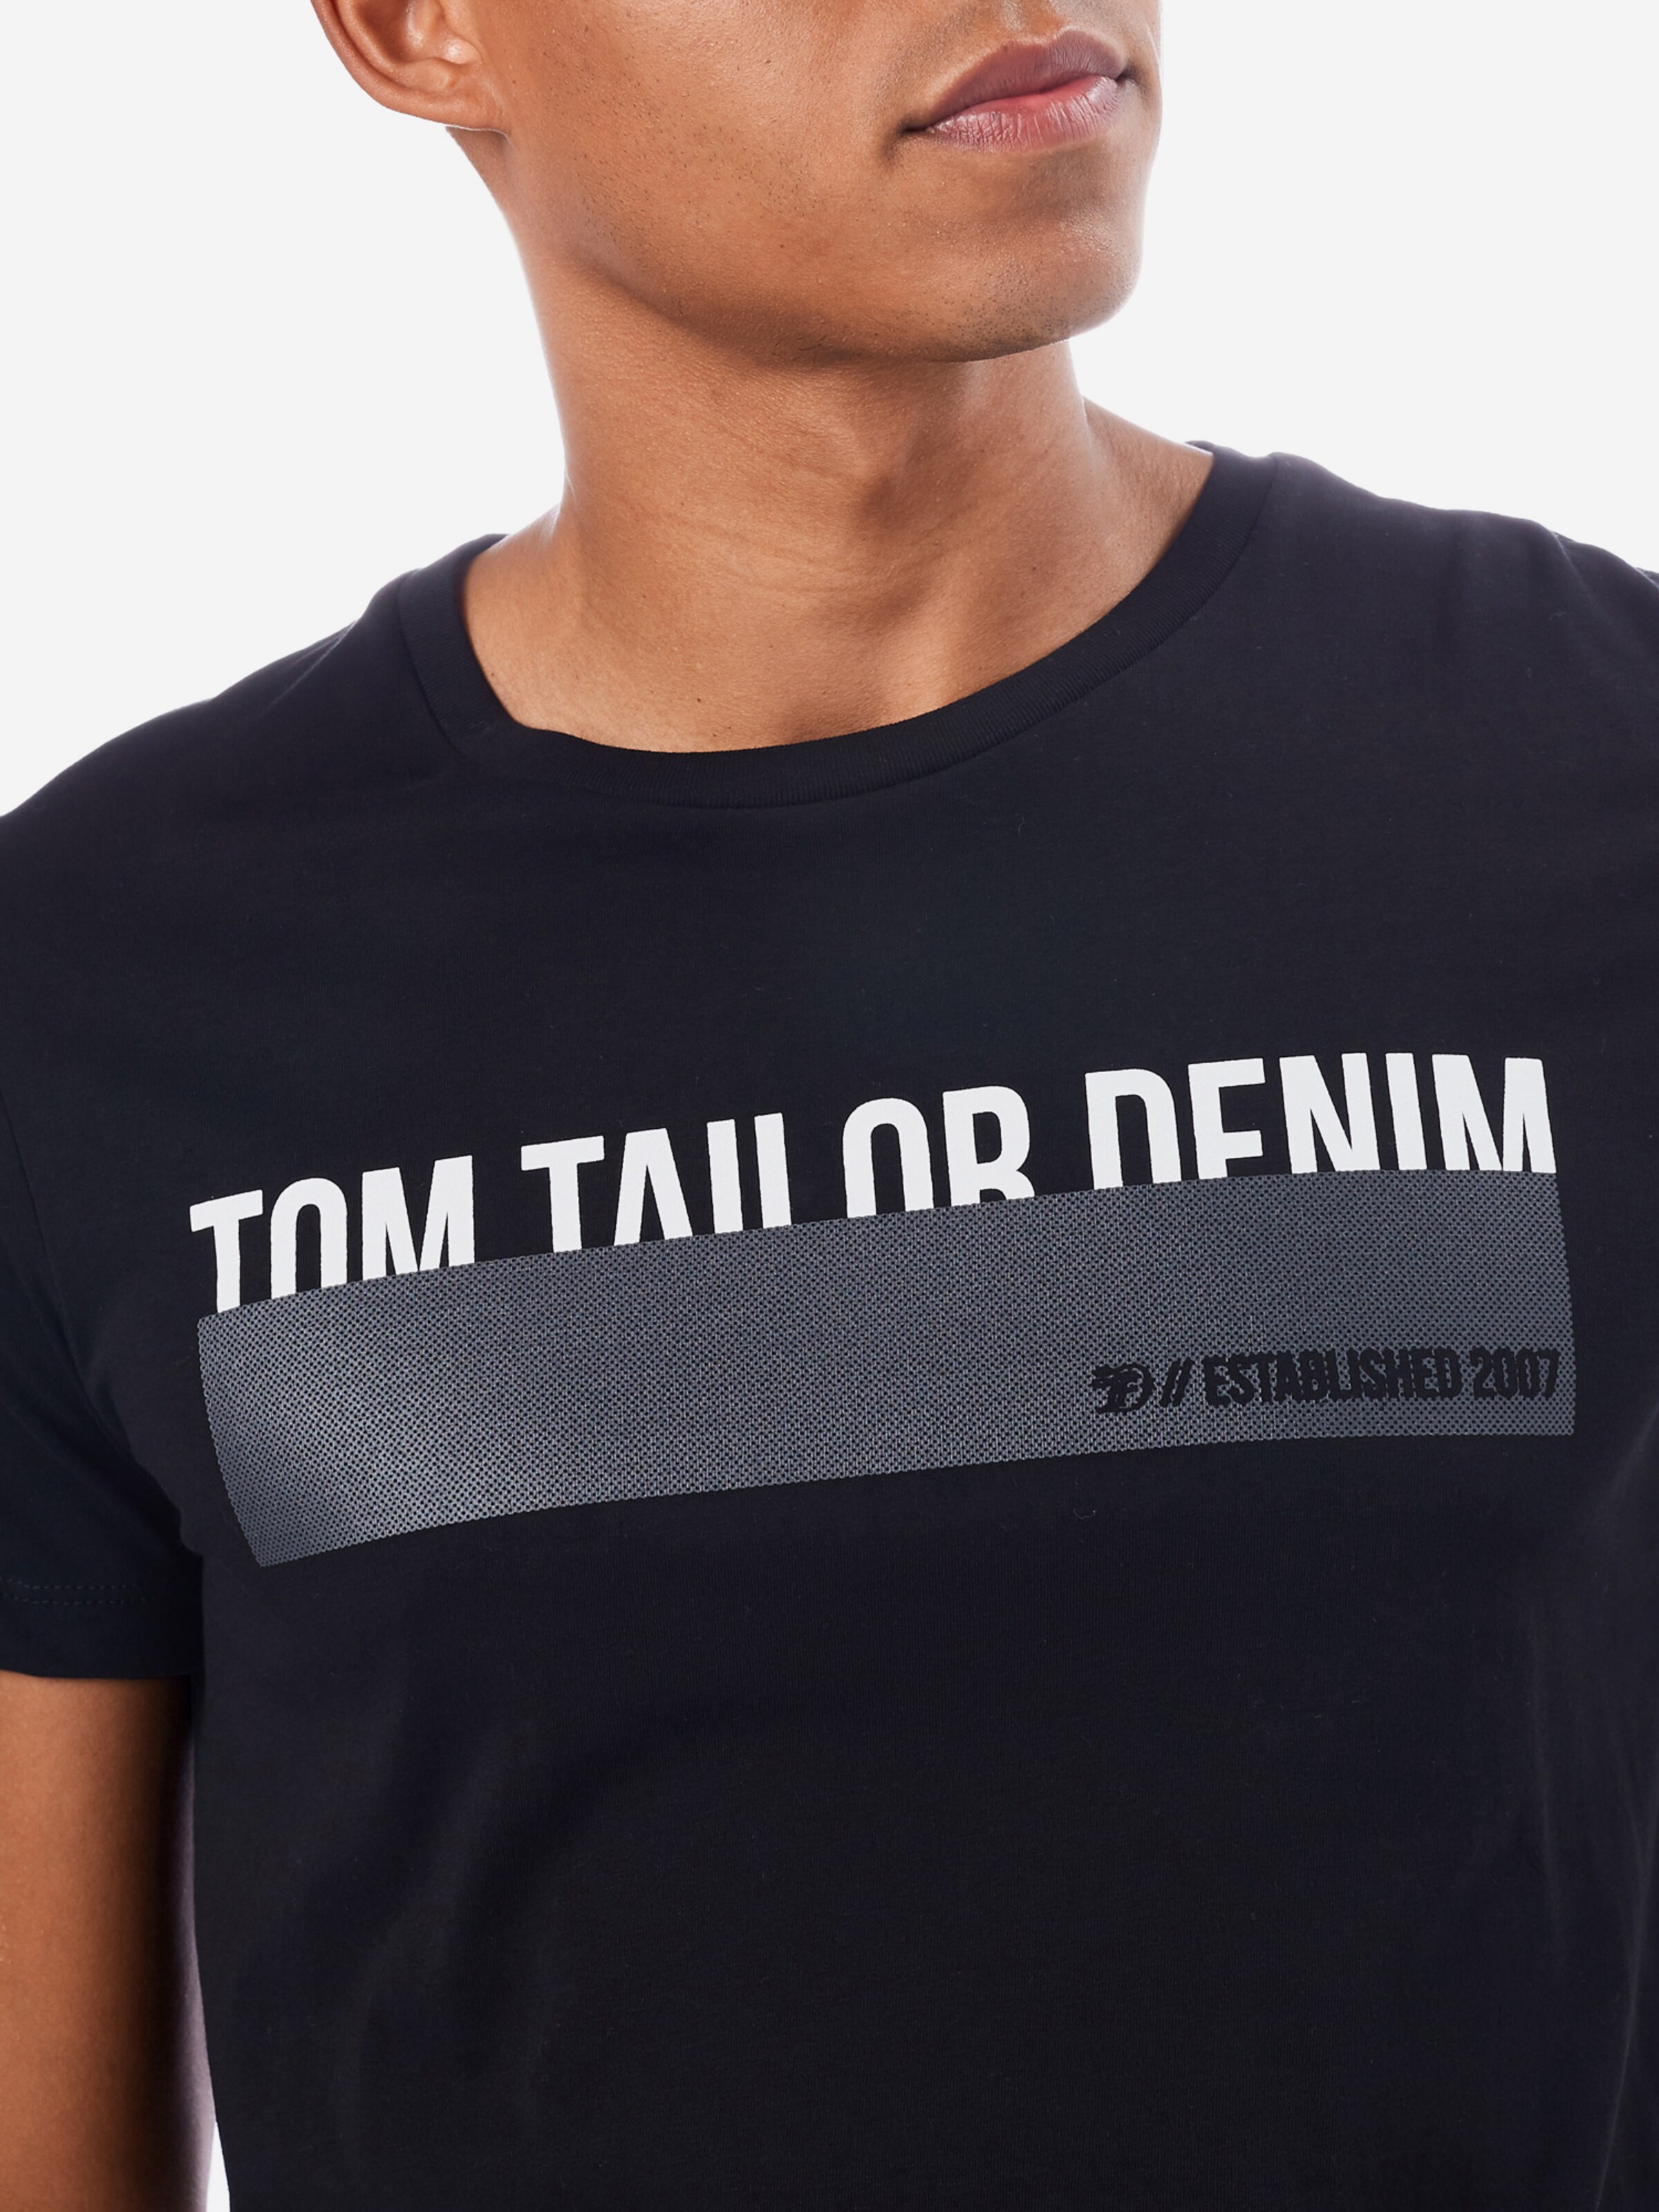 Männer Shirts TOM TAILOR DENIM T-Shirt in Schwarz - IQ19385